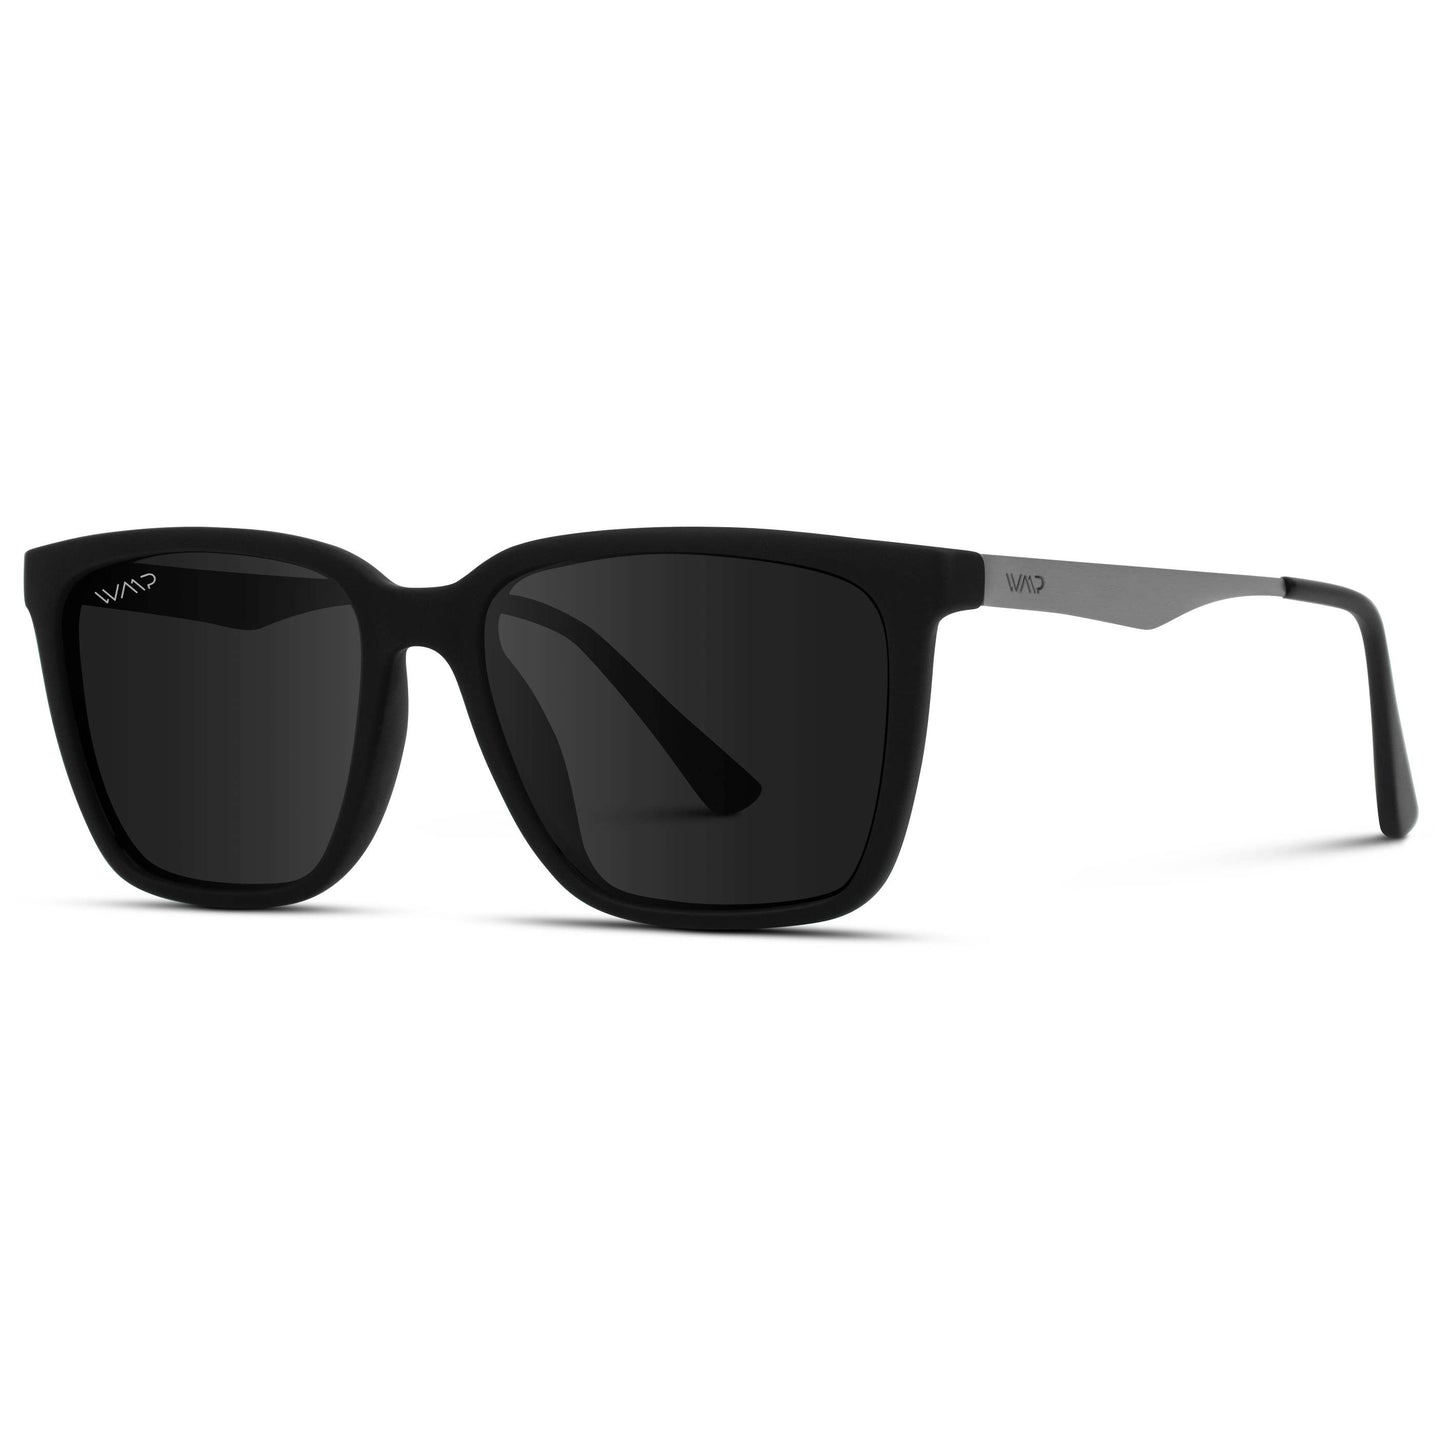 Mason - Polarized Rectangular Metal Unisex Sunglasses